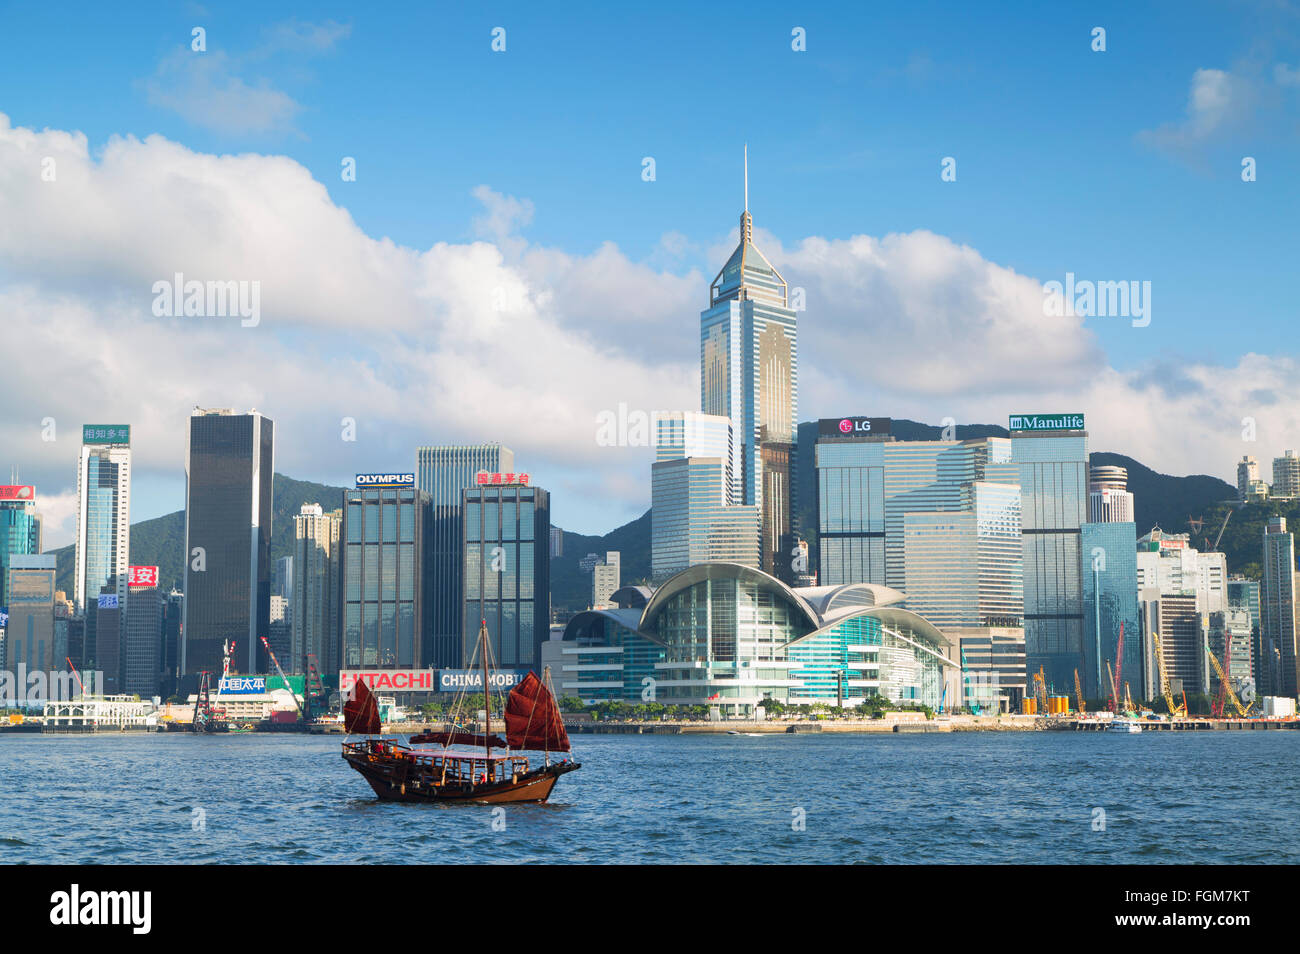 Junk boat passing Convention Centre and Hong Kong Island skyline, Hong Kong, China Stock Photo